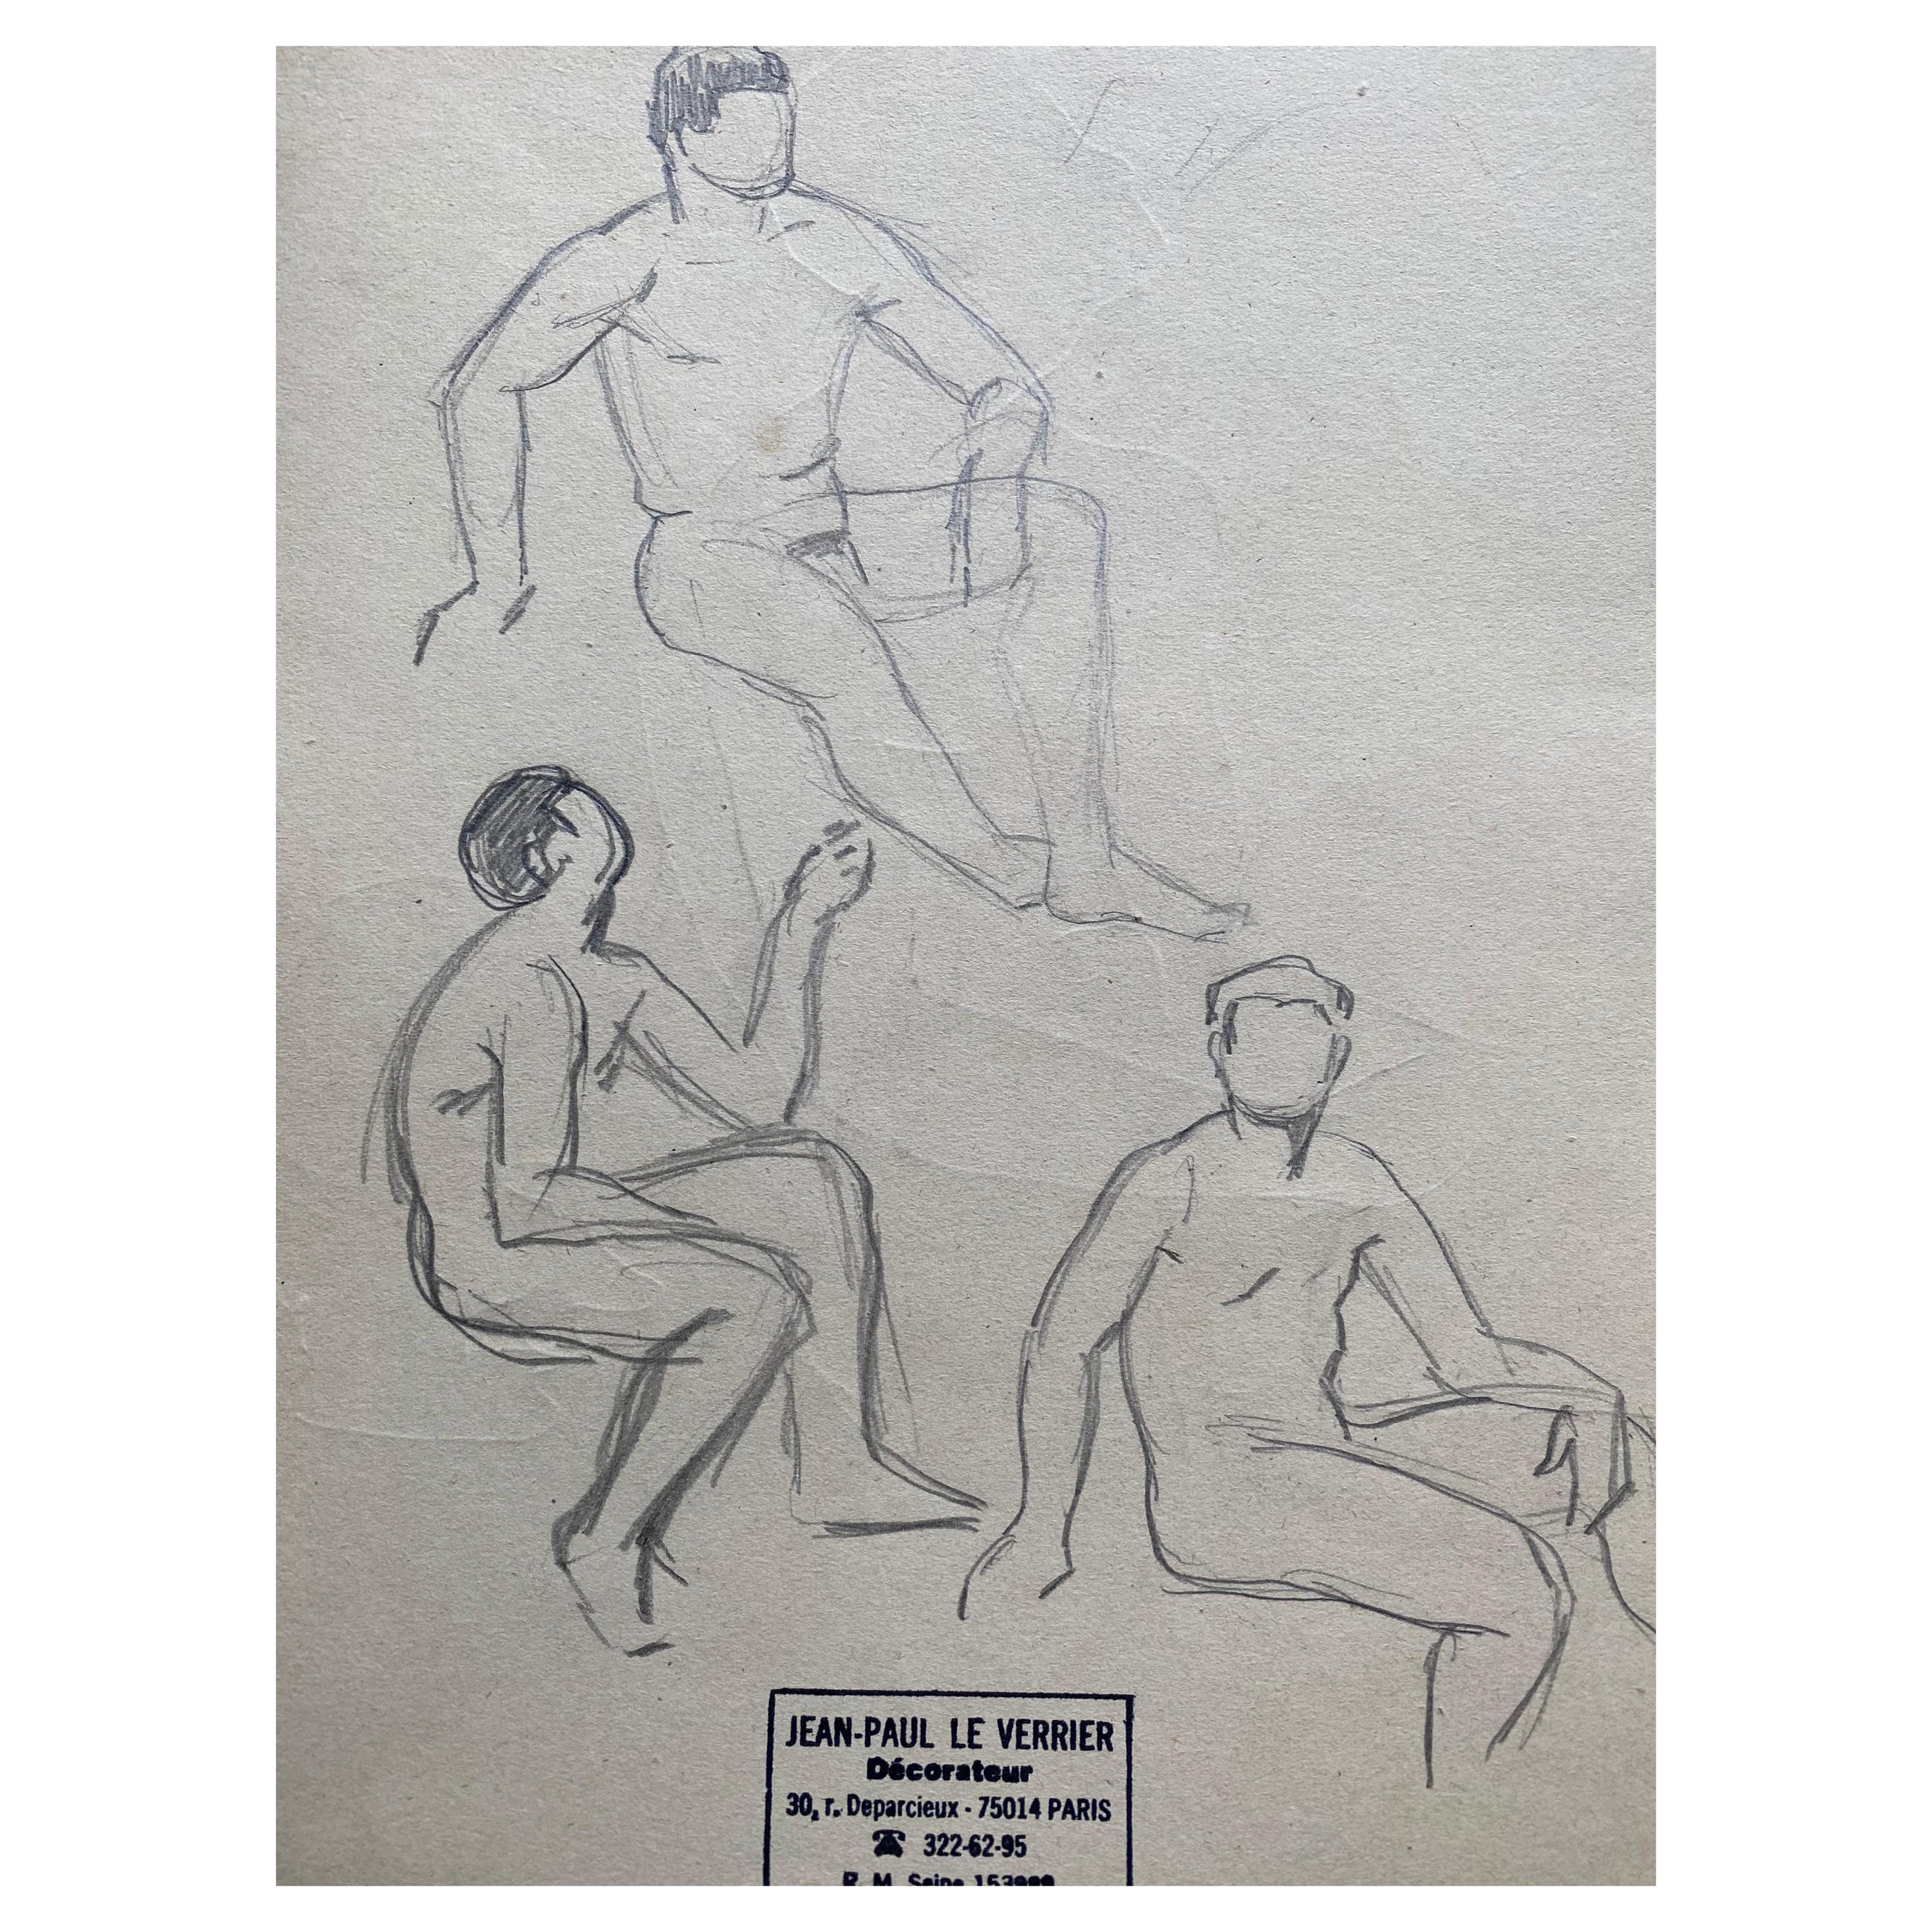 Il s'agit d'une esquisse de dessin d'origine française du milieu du 20e siècle en ligne représentant des hommes nus, estampillée